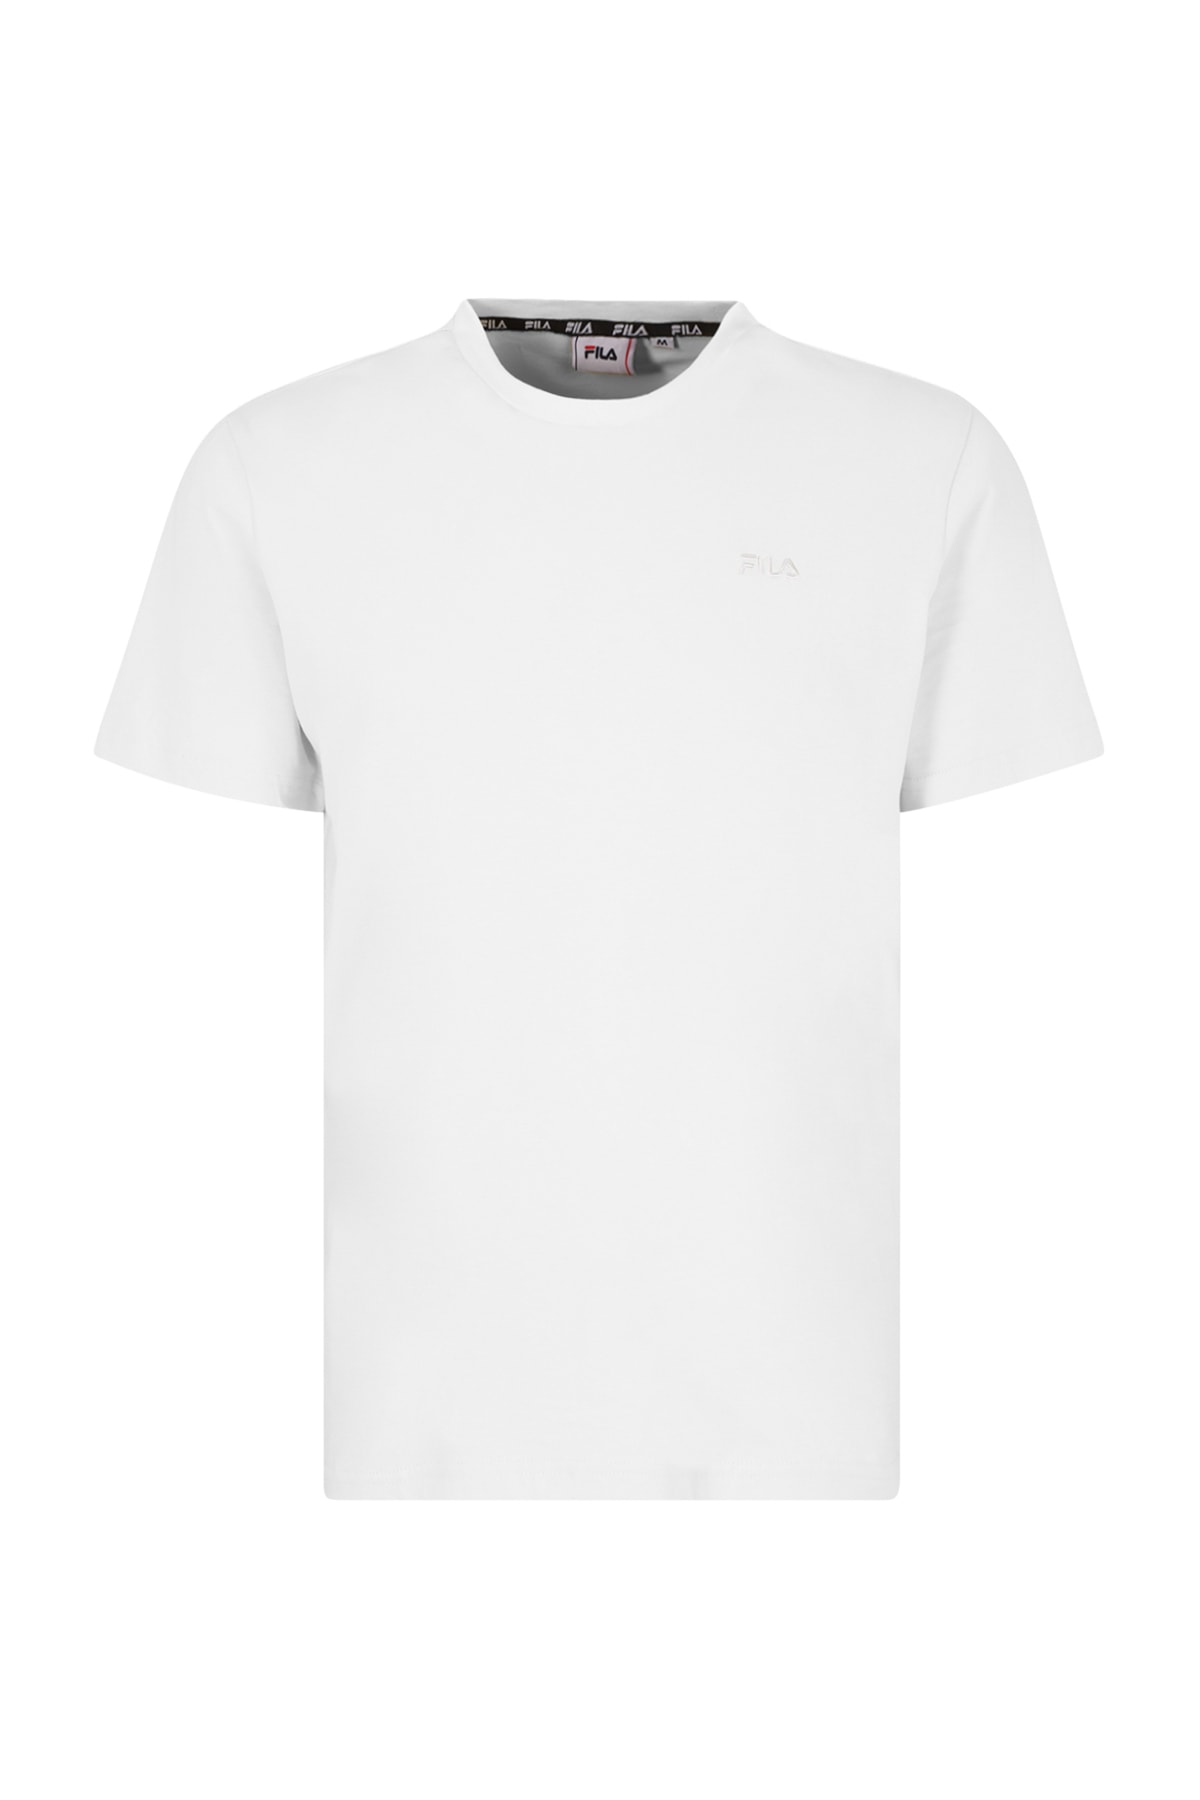 Ярко-белая футболка для женщин/девочек Fila, белый футболка для девочек fila черный